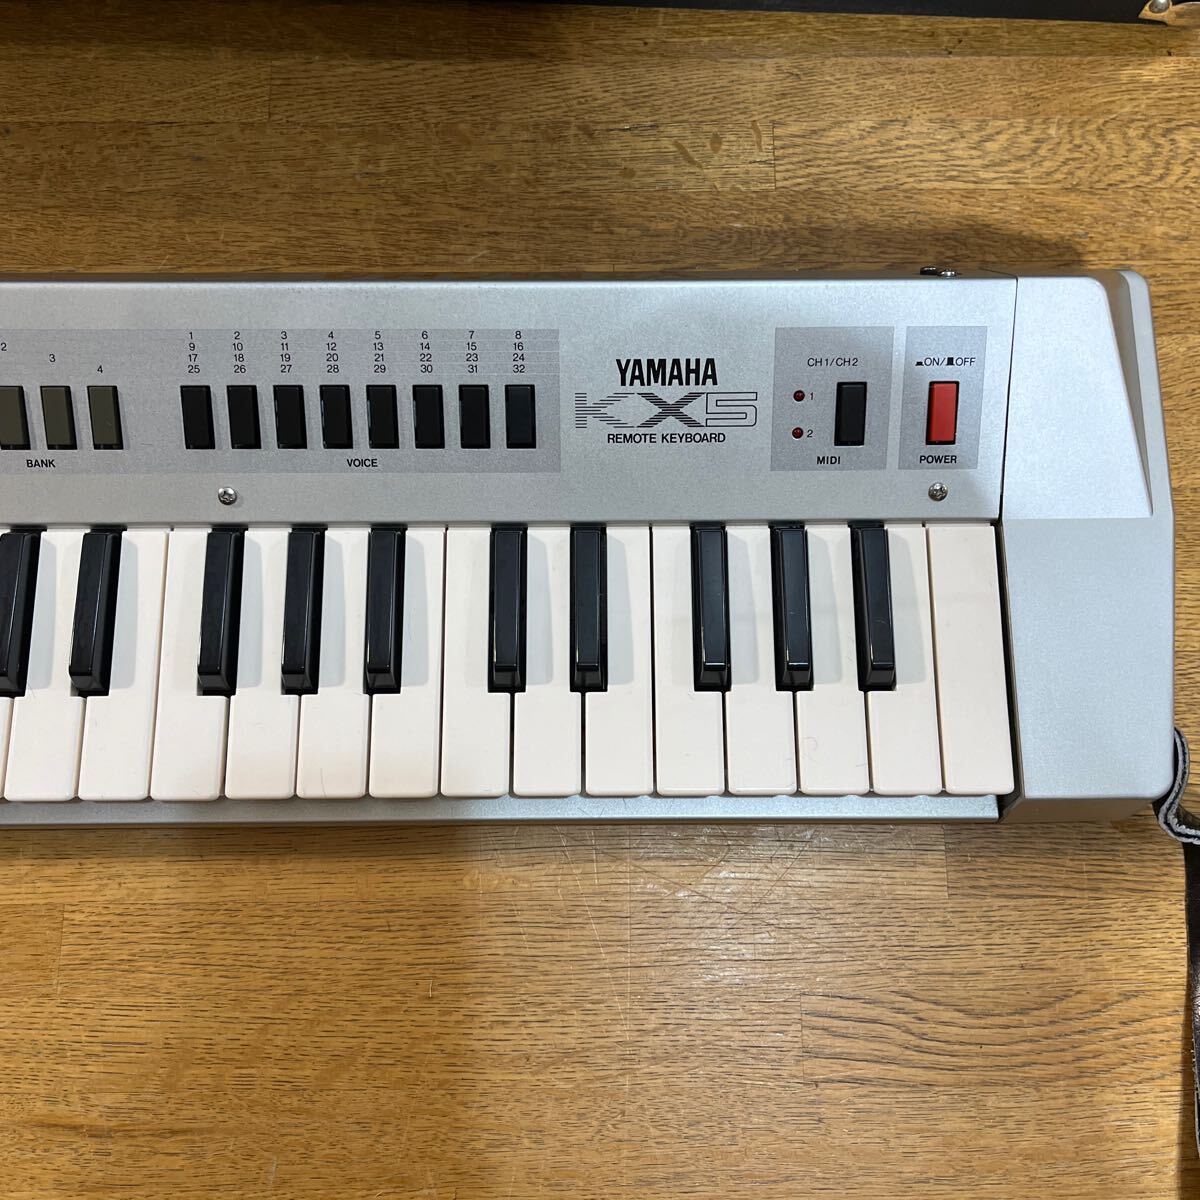 YAMAHA ヤマハ ショルダーキーボード KX5 ハードケース付き 中古 楽器 リモートキーボード 趣味 鍵盤楽器 の画像4